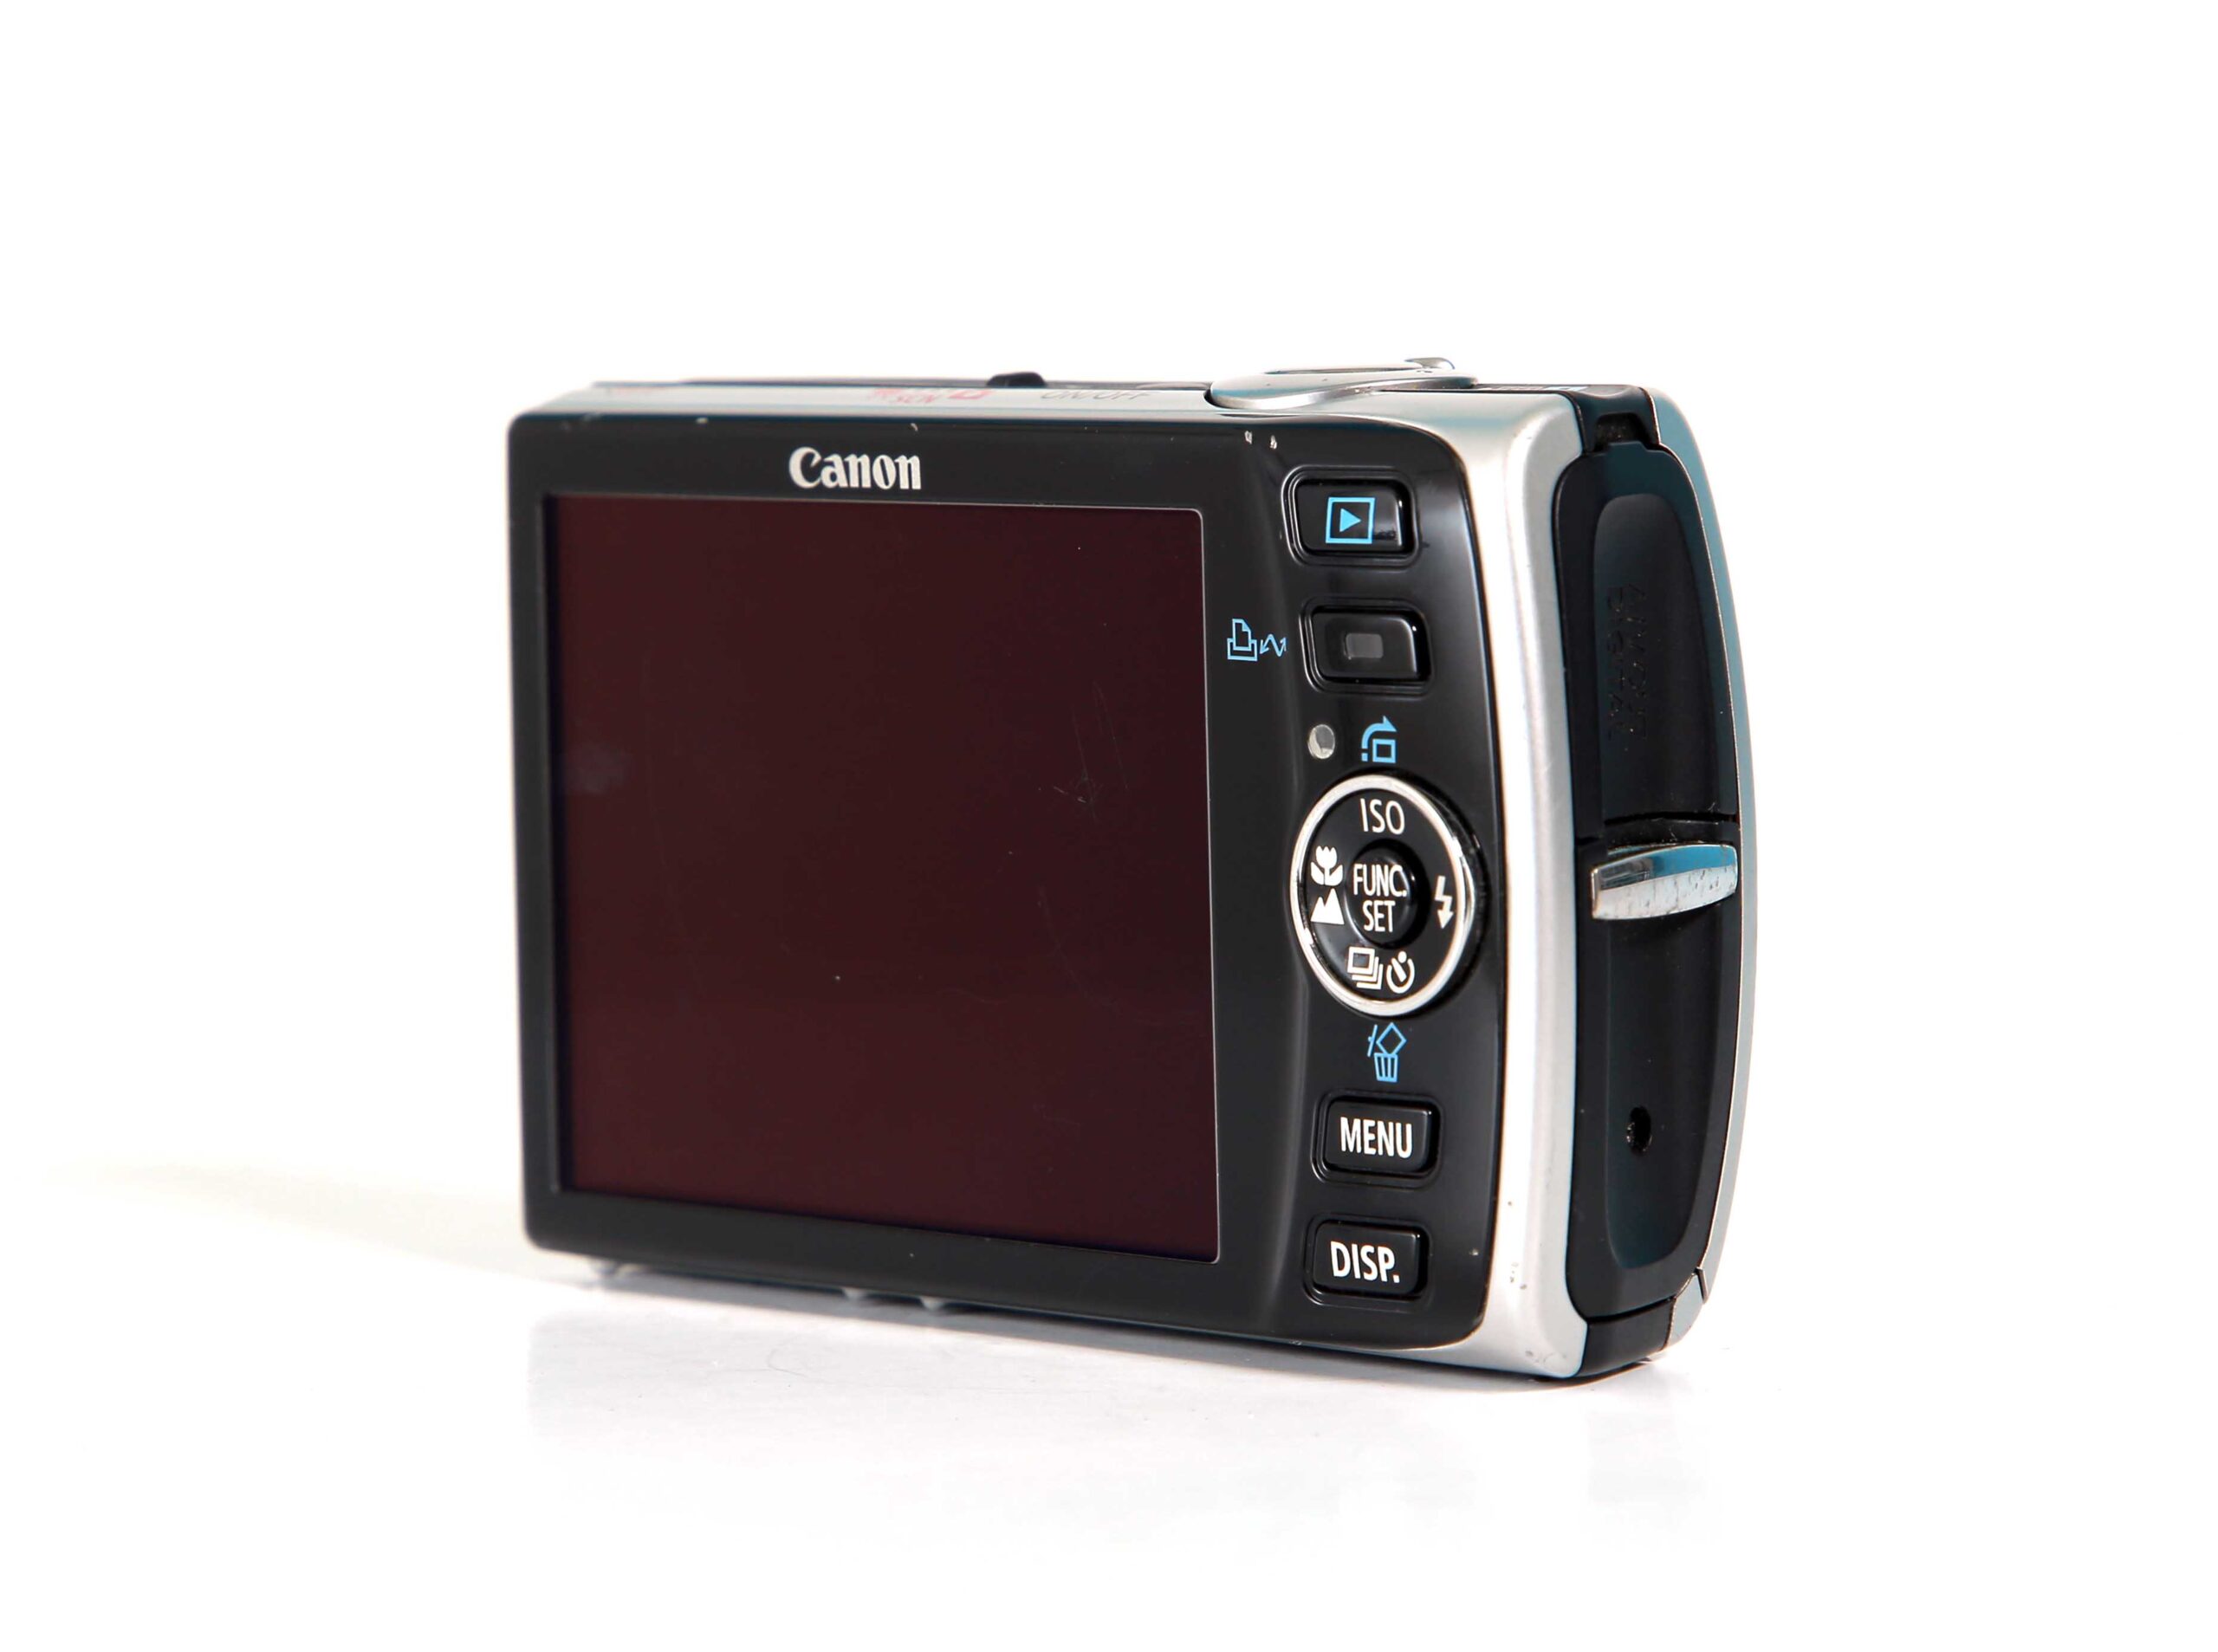 流行りタッチパネルで簡単操作 Canon キャノン IXY 930 IS #6205 デジタルカメラ